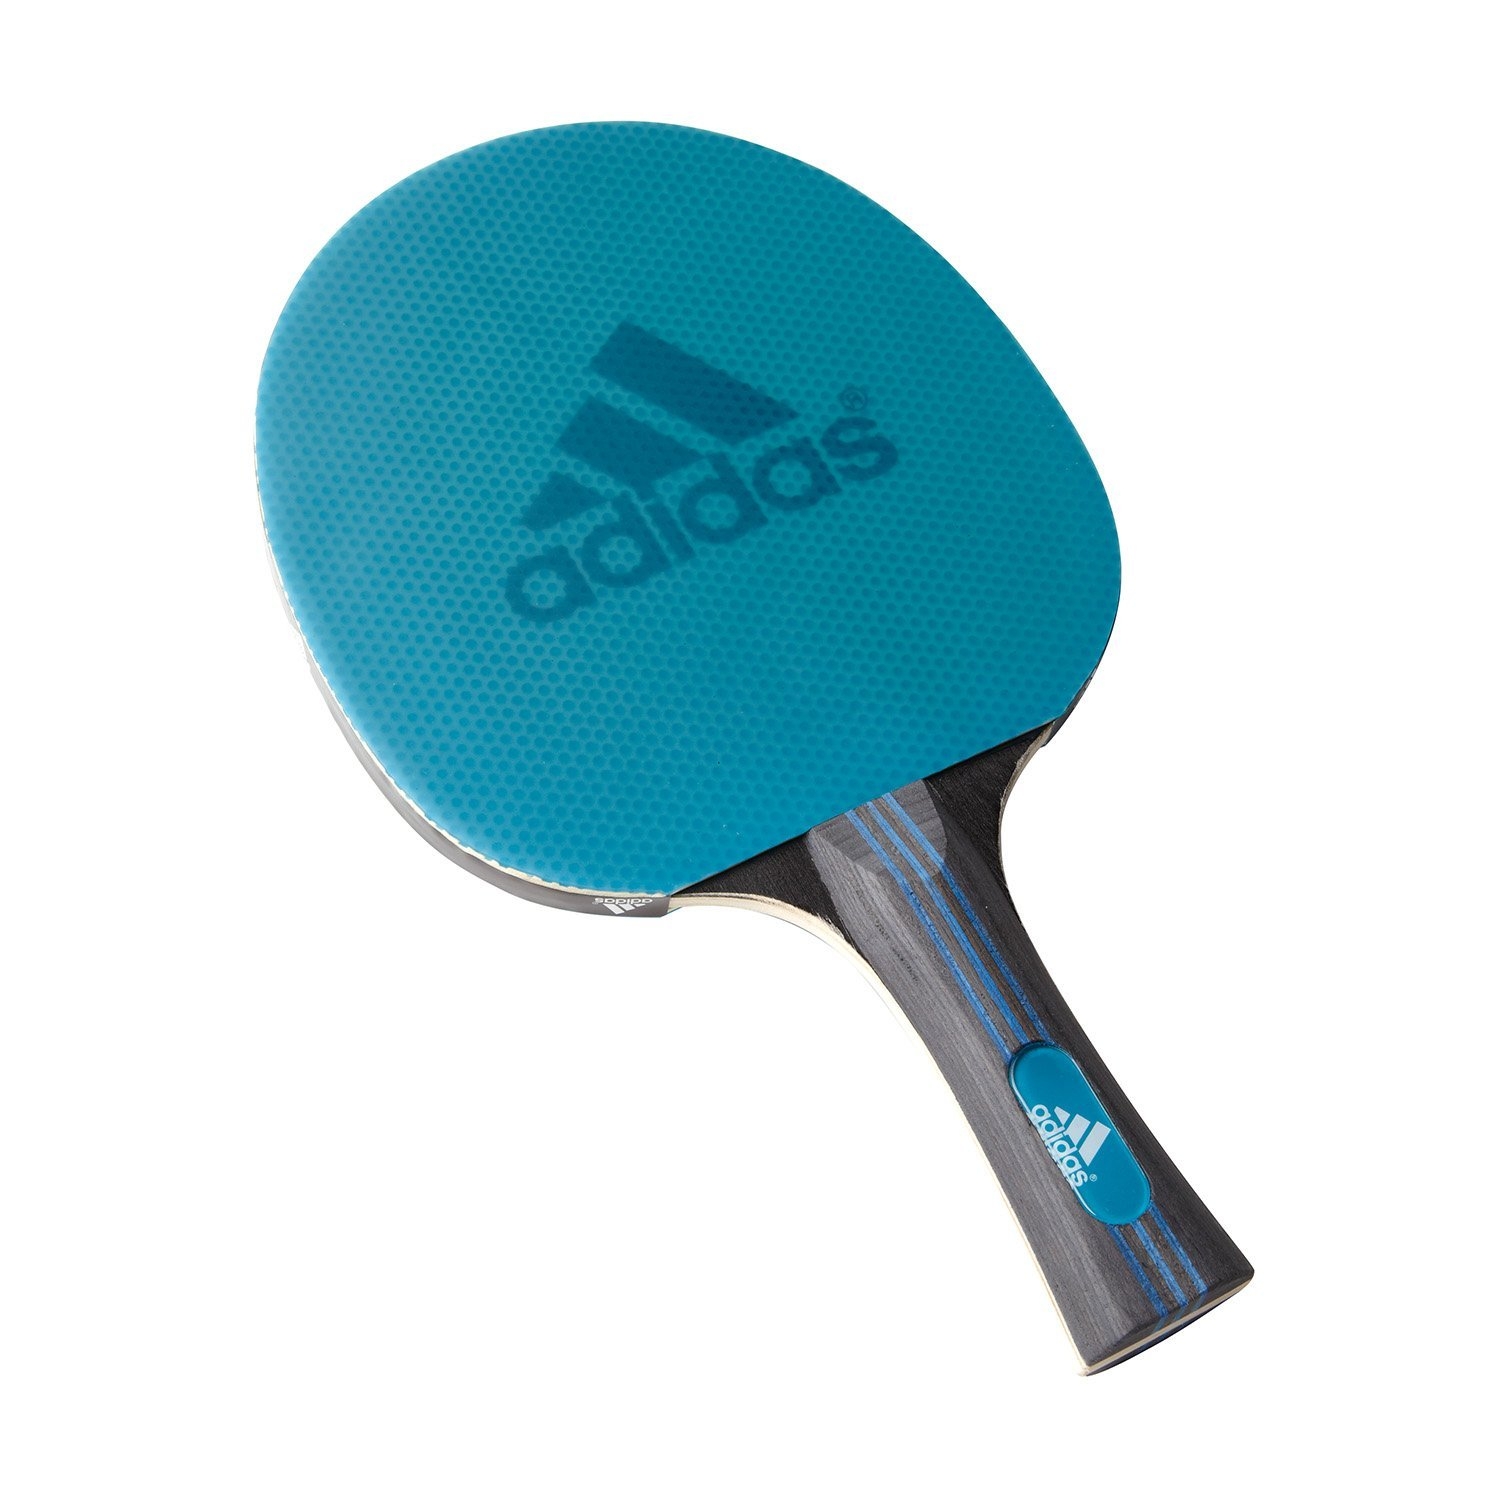 Лучшие накладки для настольного тенниса. Adidas Laser ракетка для настольного тенниса. Ракетка адидас для настольного тенниса. Ракетка адидас для настольного тенниса Vigor 120. Ракетка для пинг понга adidas.